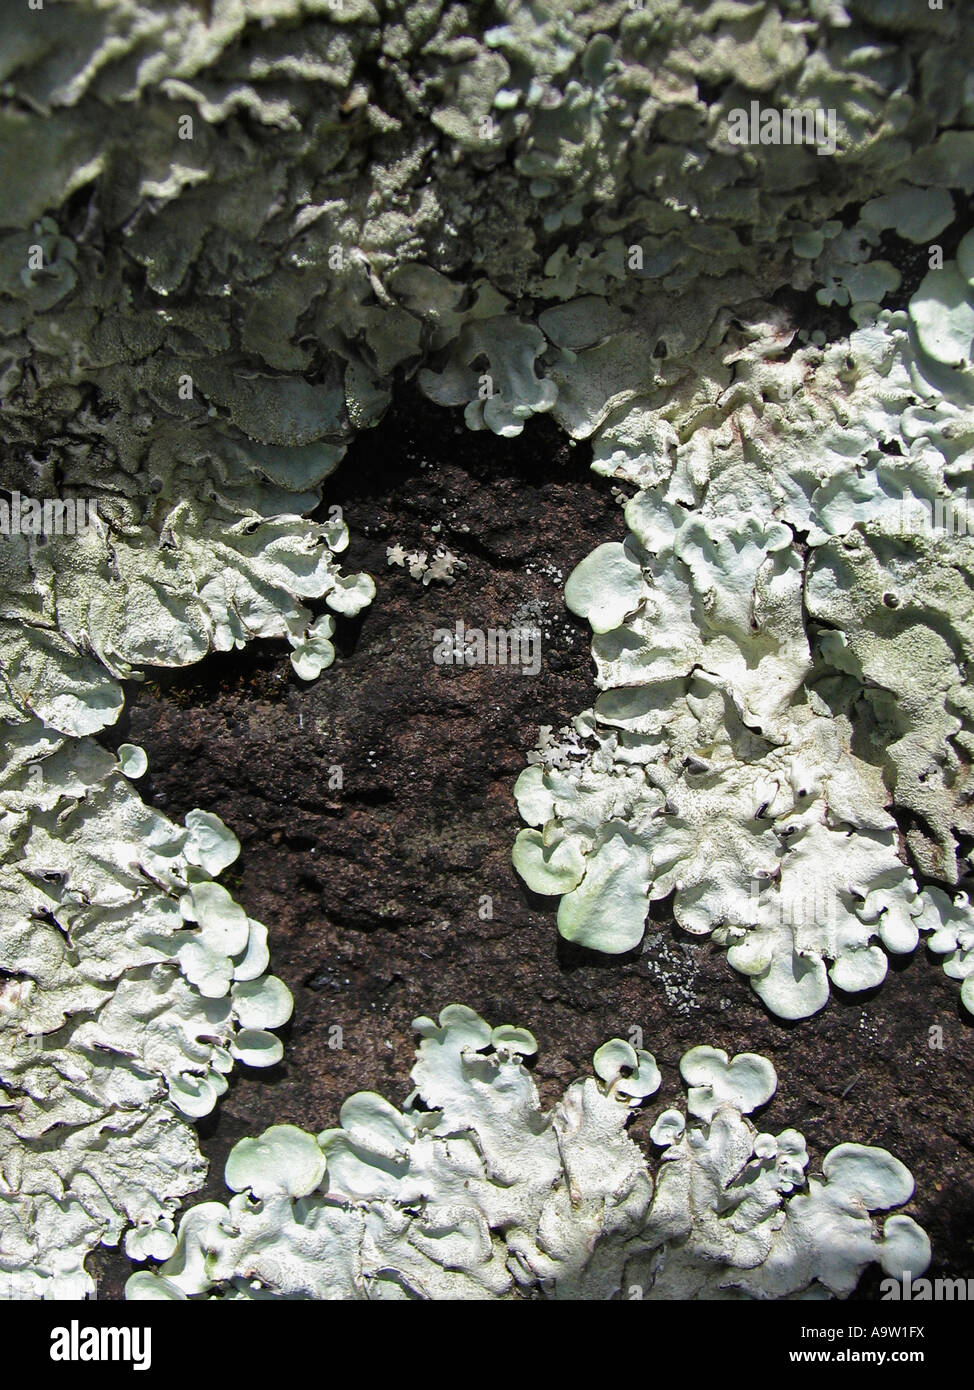 Foliose lichen squamulose on basalt. Sinhangad, Pune, Maharashtra, India. Stock Photo